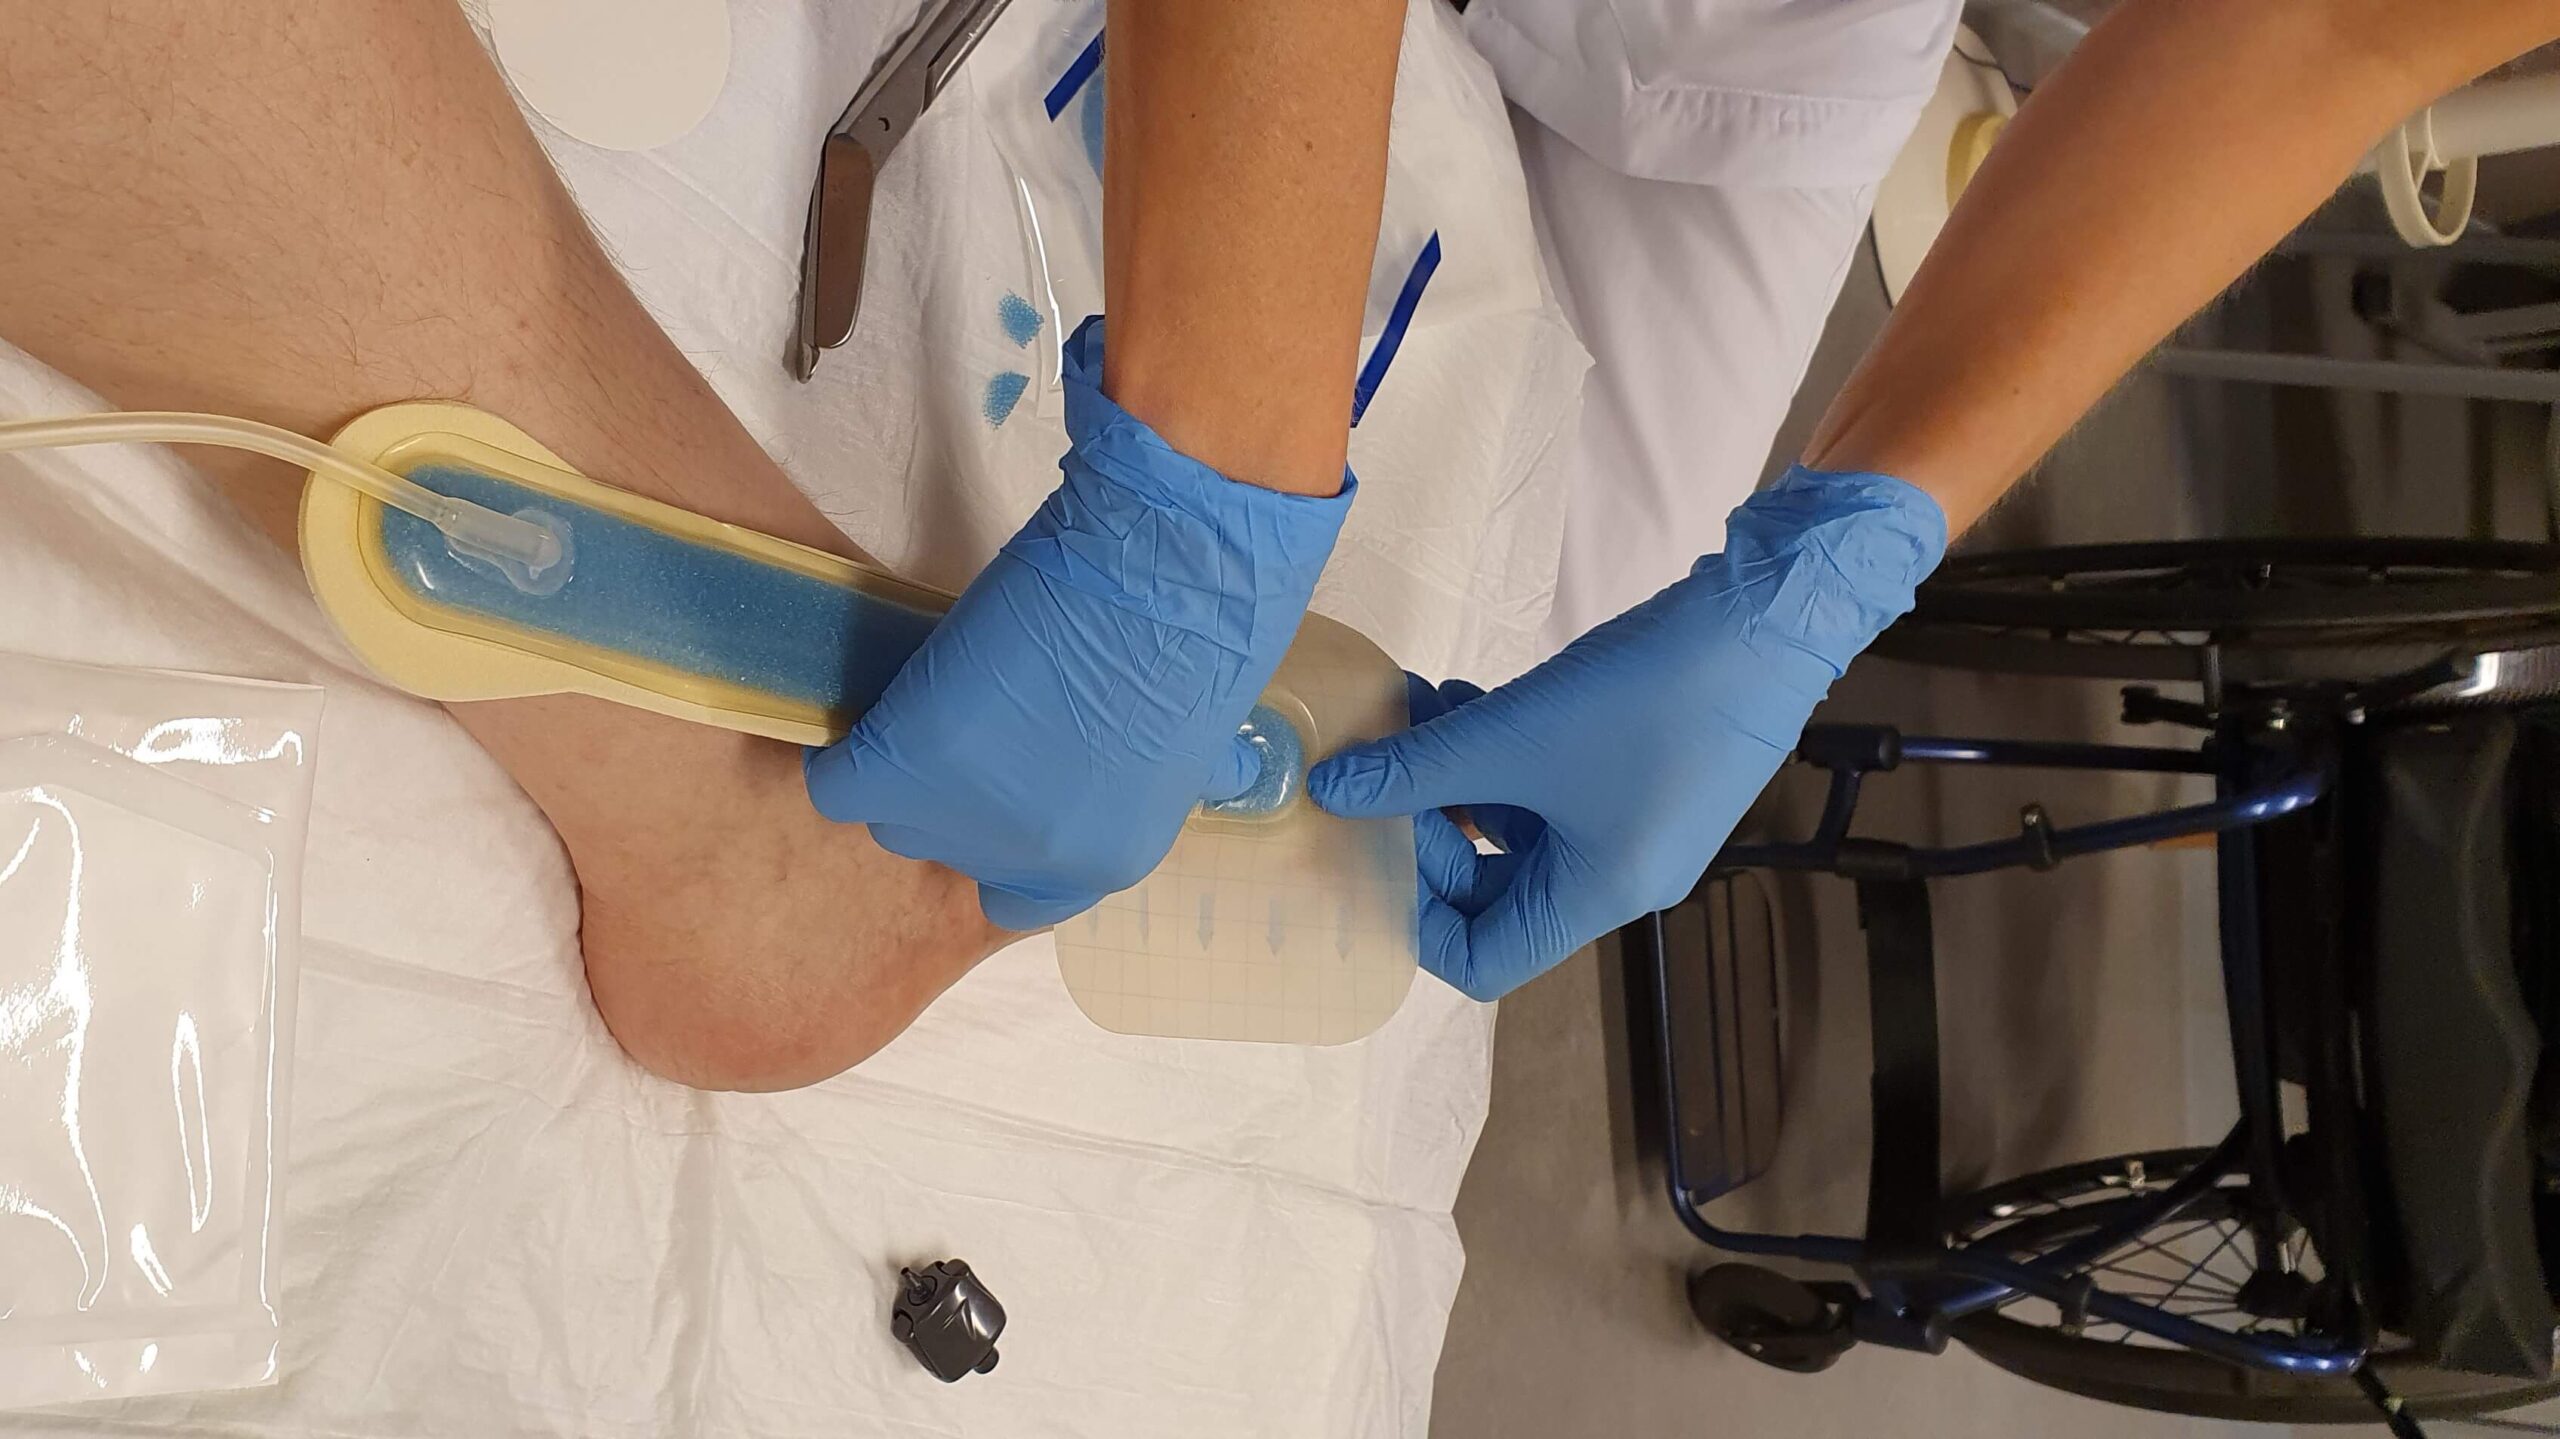 foto van voet die door een verpleegster, alias Florence Nightingale, wordt verzorgd met rechts in beeld de rolstoel van de patiënt.